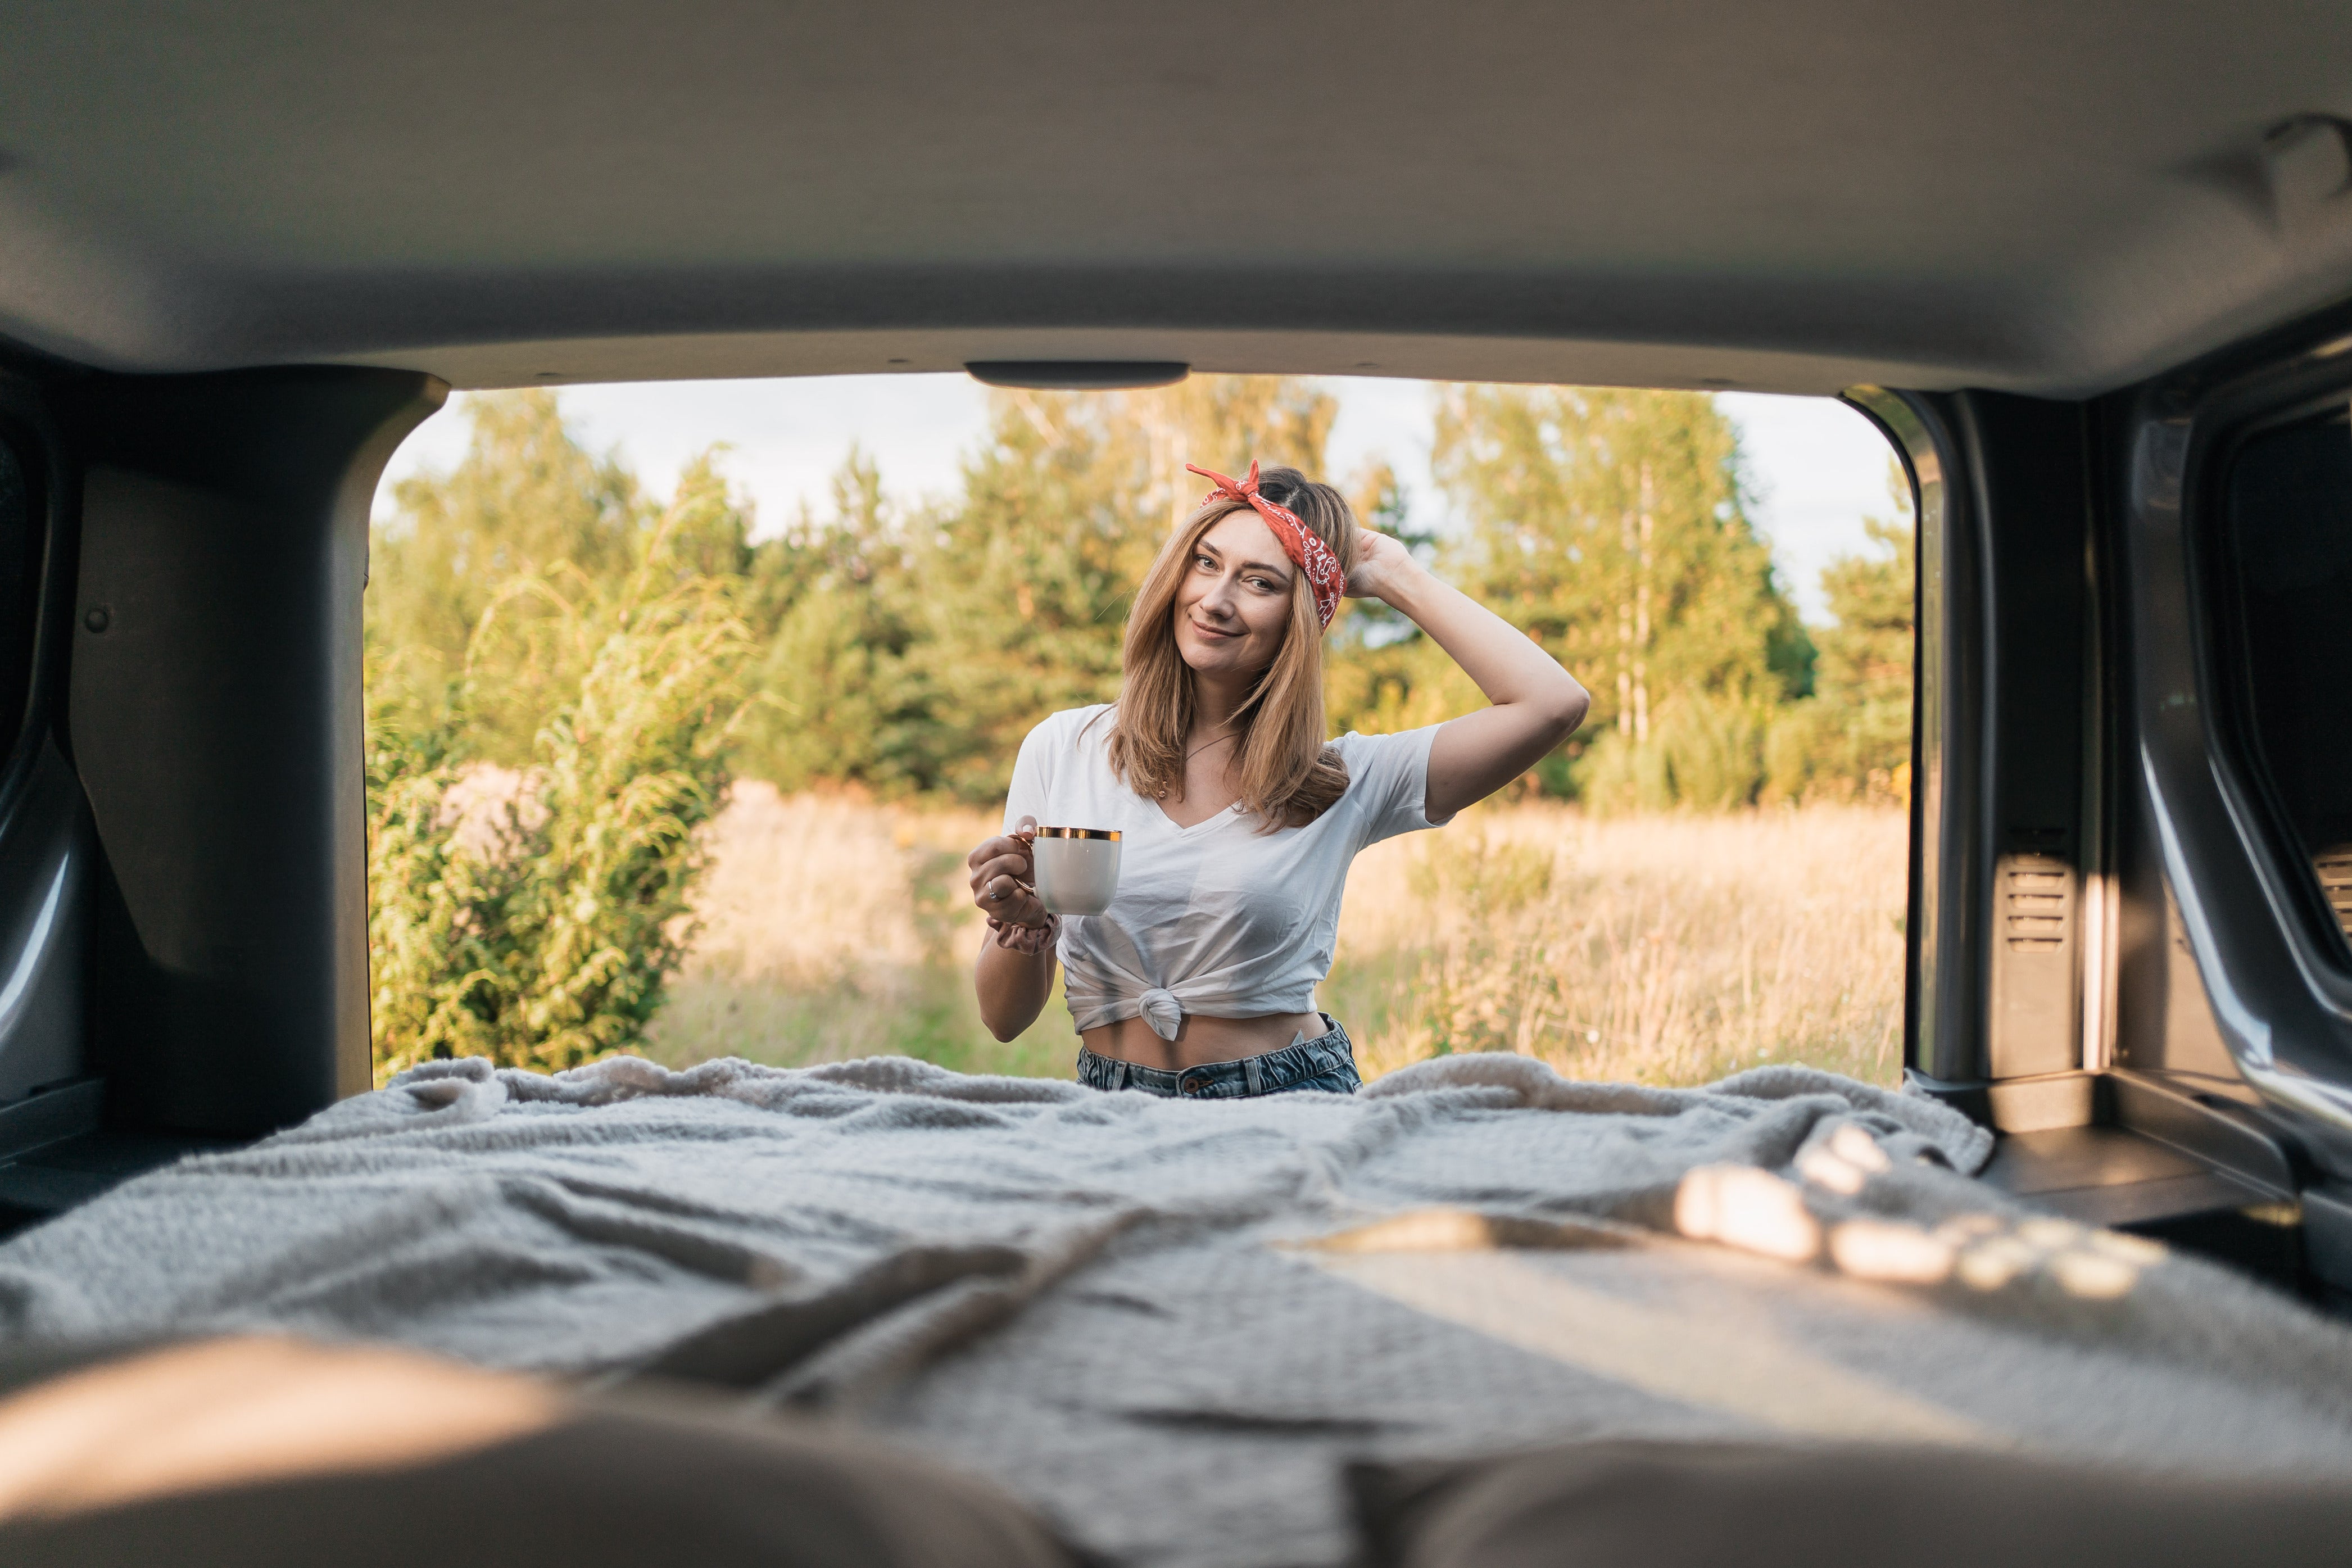 RAXO Base Campervan-Modul – Verwandeln Sie Ihr Auto in einen komfortablen und funktionalen Campervan